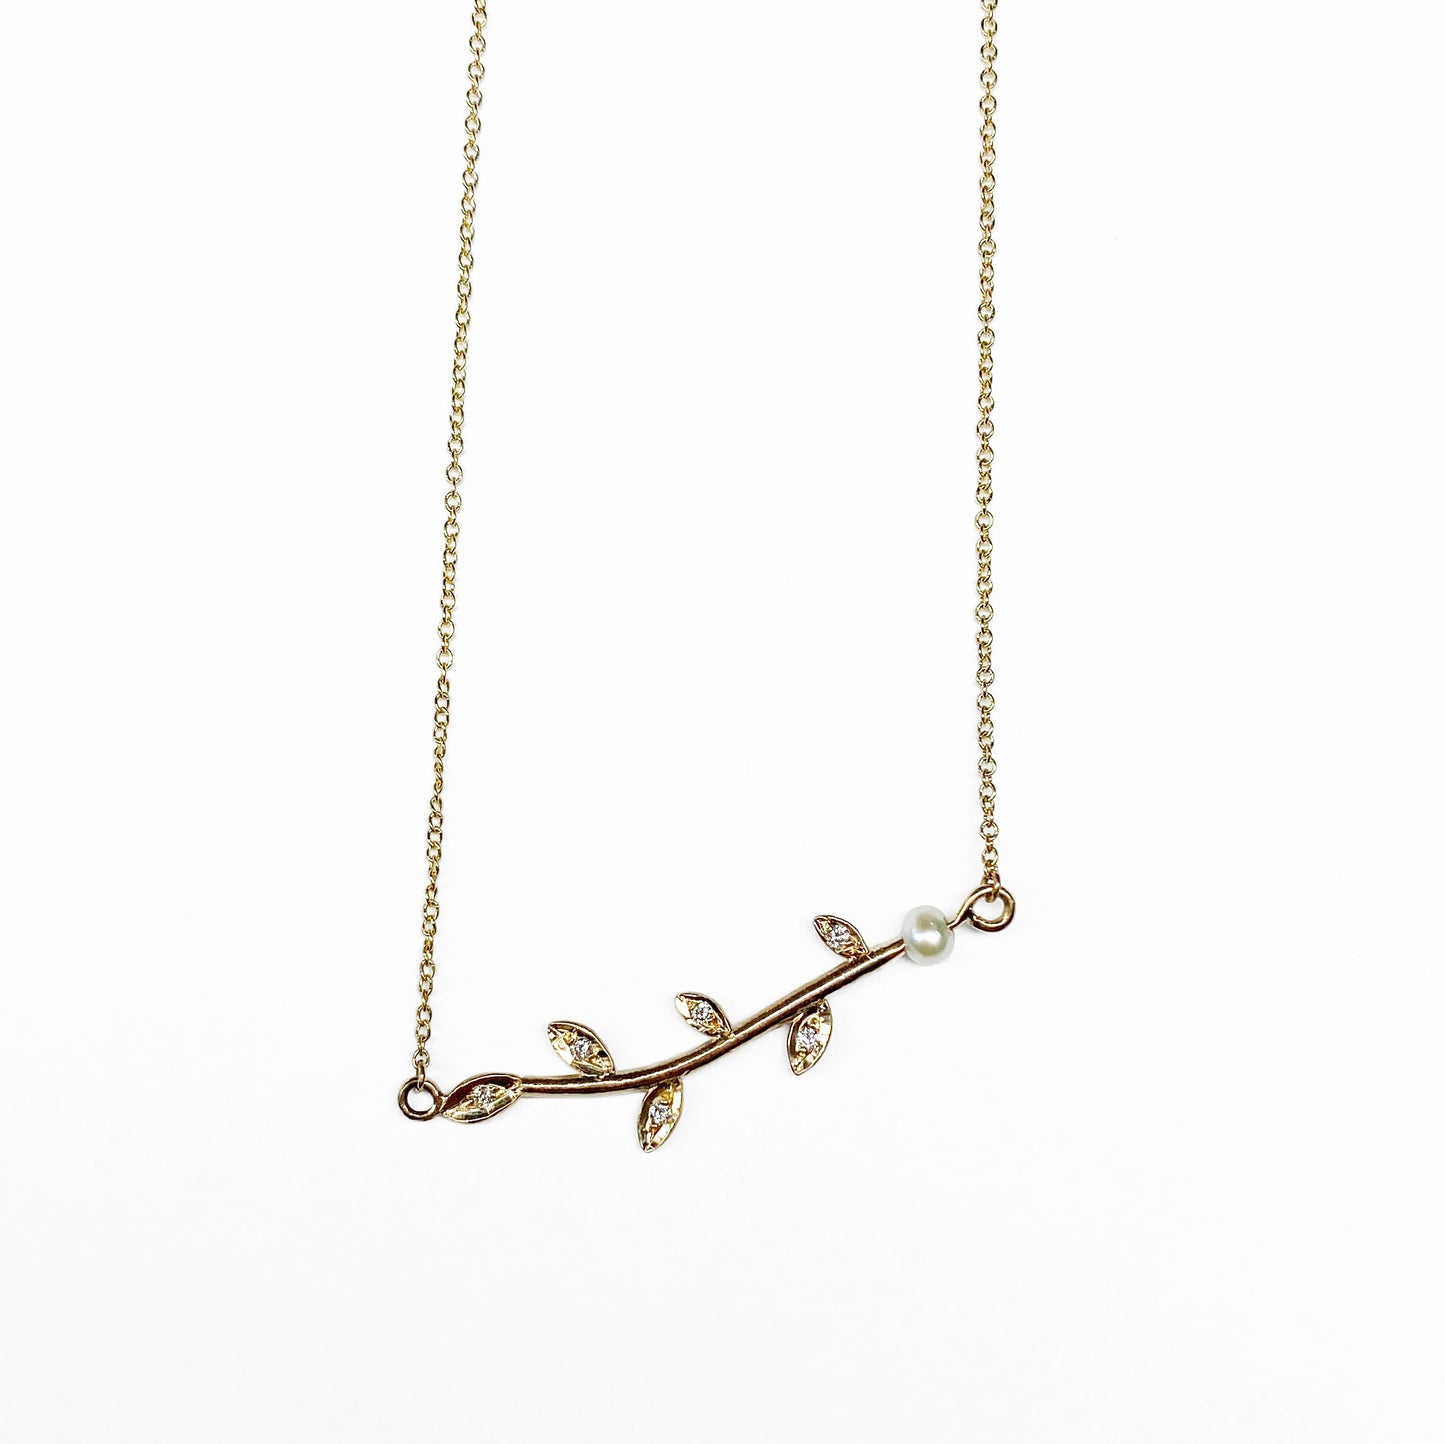 18ky Branch Necklace with Pearl - eklektic jewelry studio